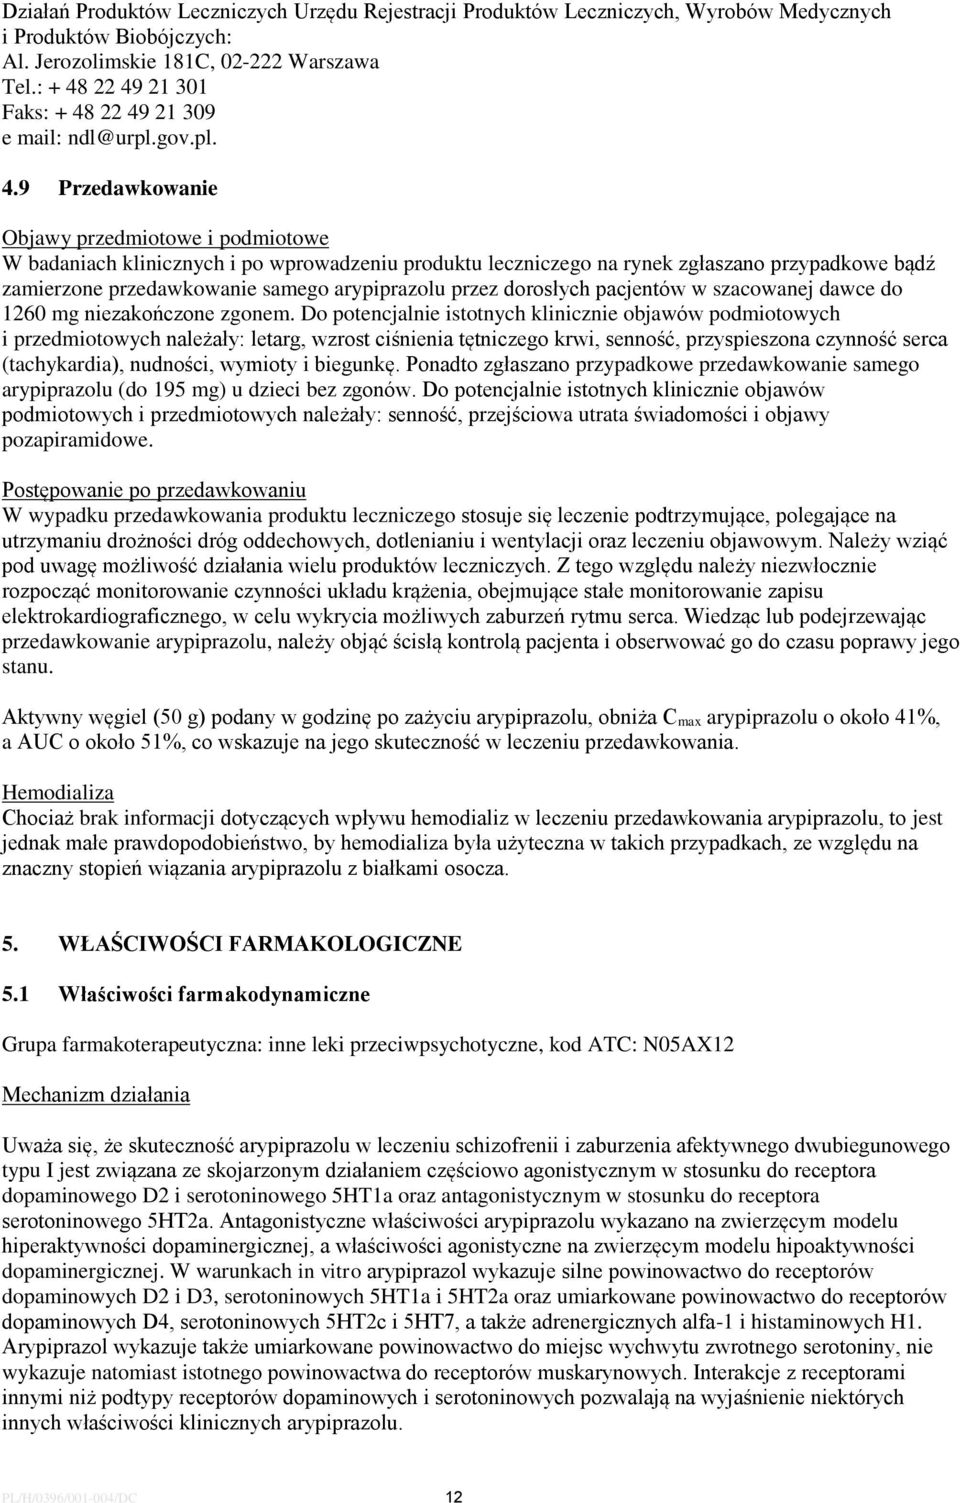 22 49 21 301 Faks 22 49 21 309 e mail: ndl@urpl.gov.pl. 4.9 Przedawkowanie Objawy przedmiotowe i podmiotowe W badaniach klinicznych i po wprowadzeniu produktu leczniczego na rynek zgłaszano